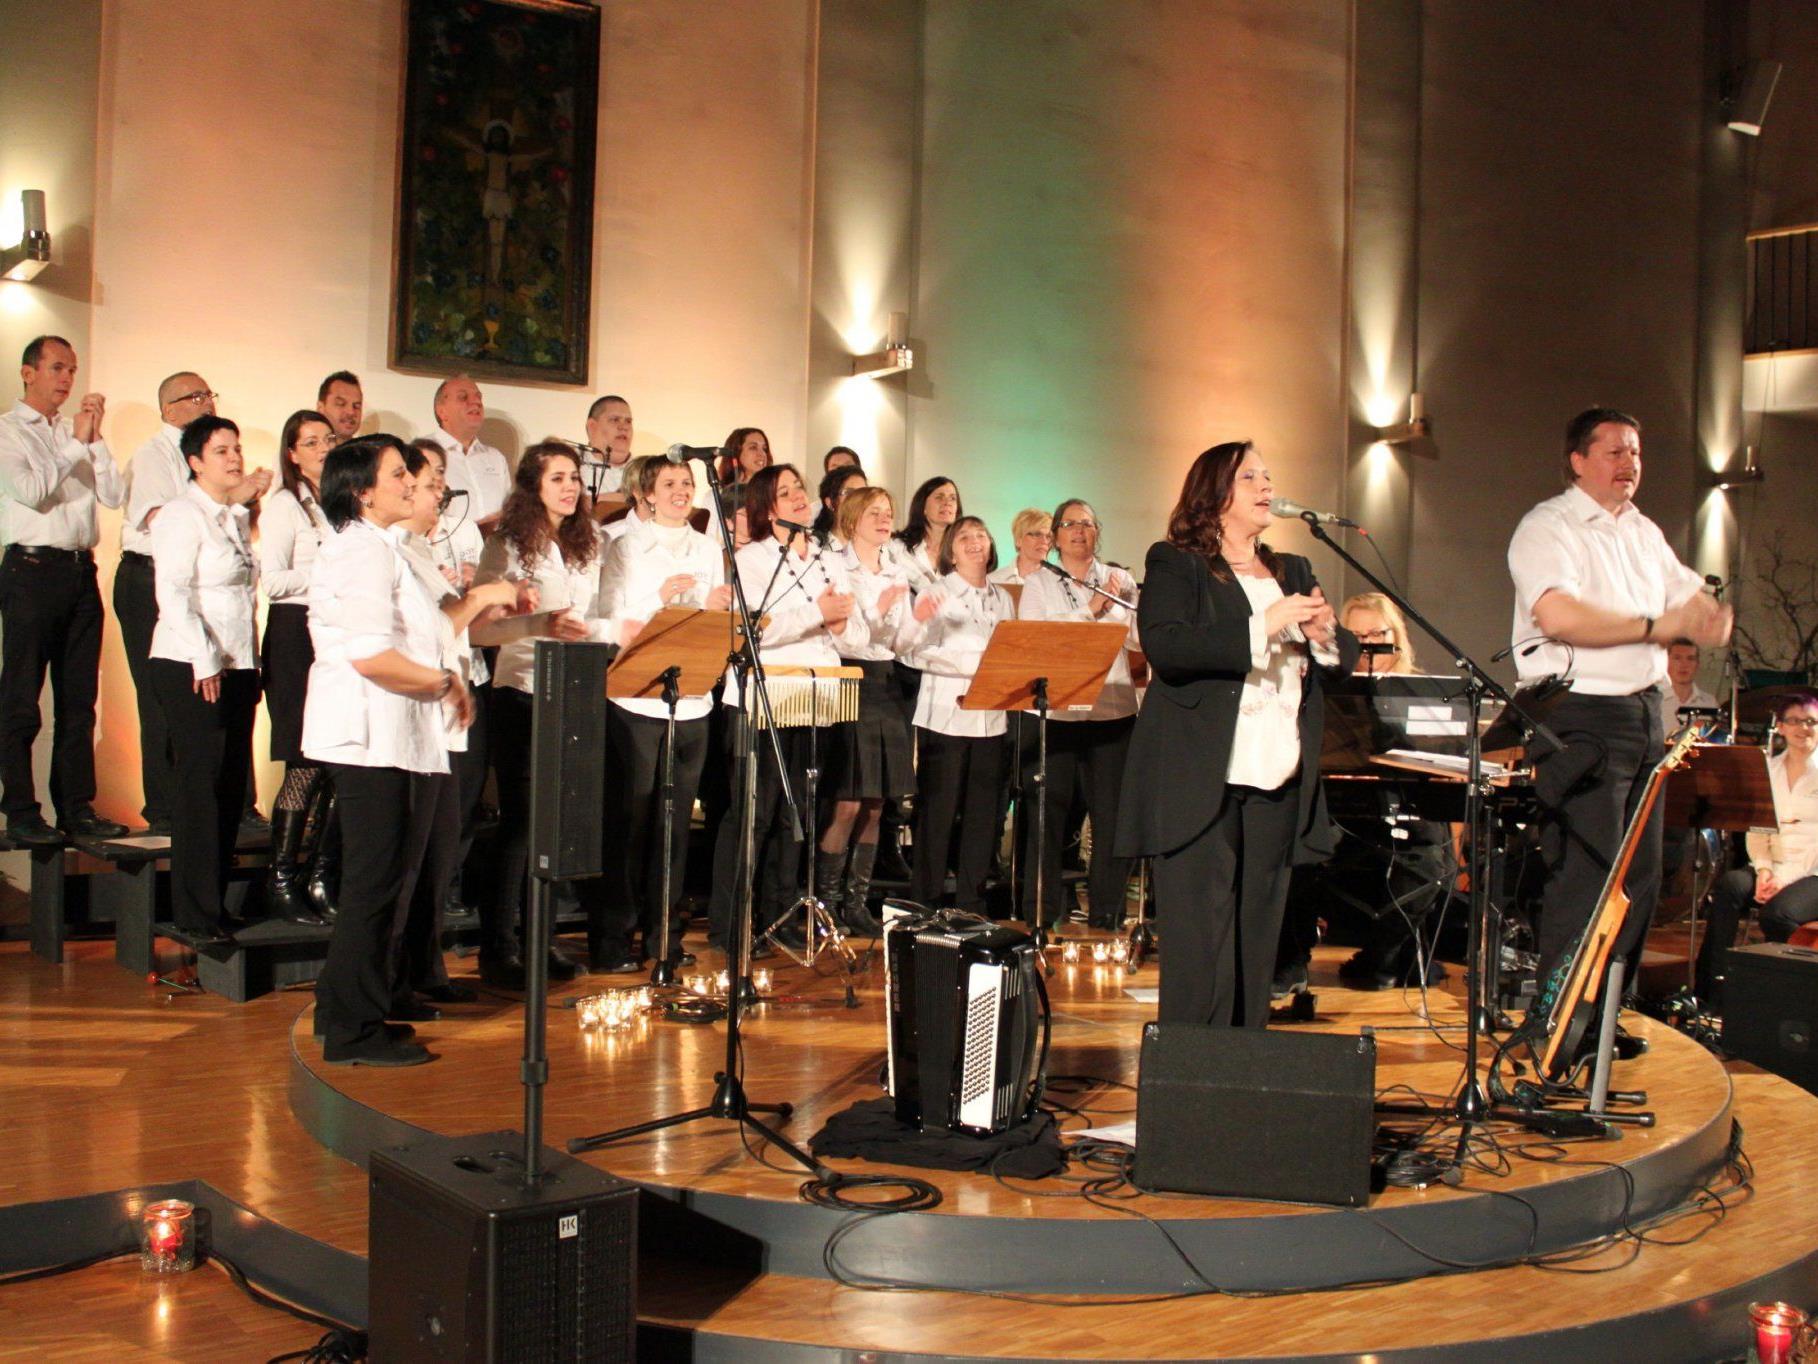 Erfolgreiches Weihnachtskonzert: Weltstar Kathy Kelly mit Chor Joy in der Pfarrkirche Altach